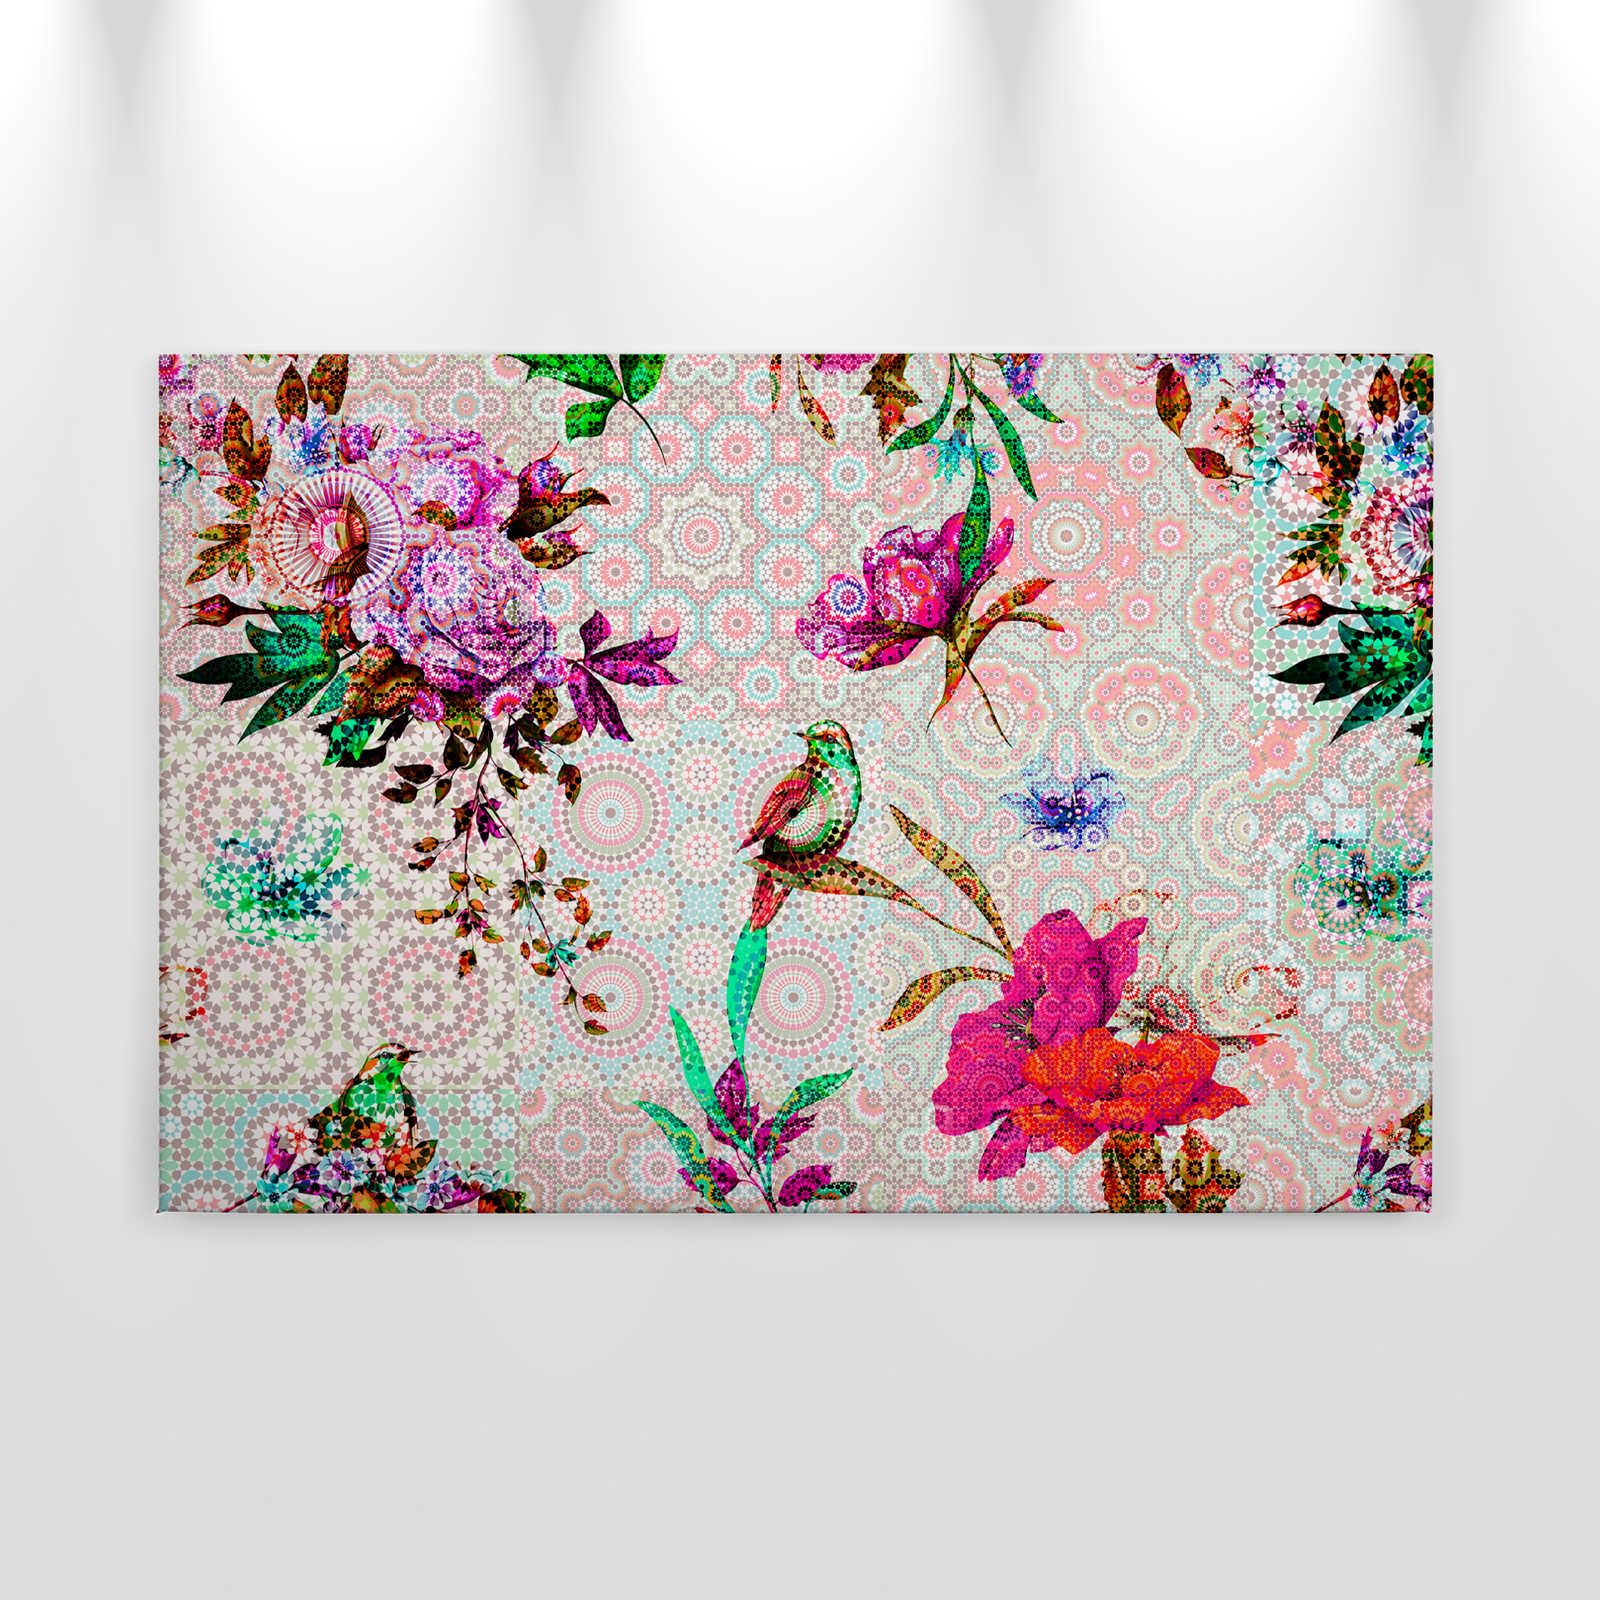             Toile design mosaïque florale - 0,90 m x 0,60 m
        